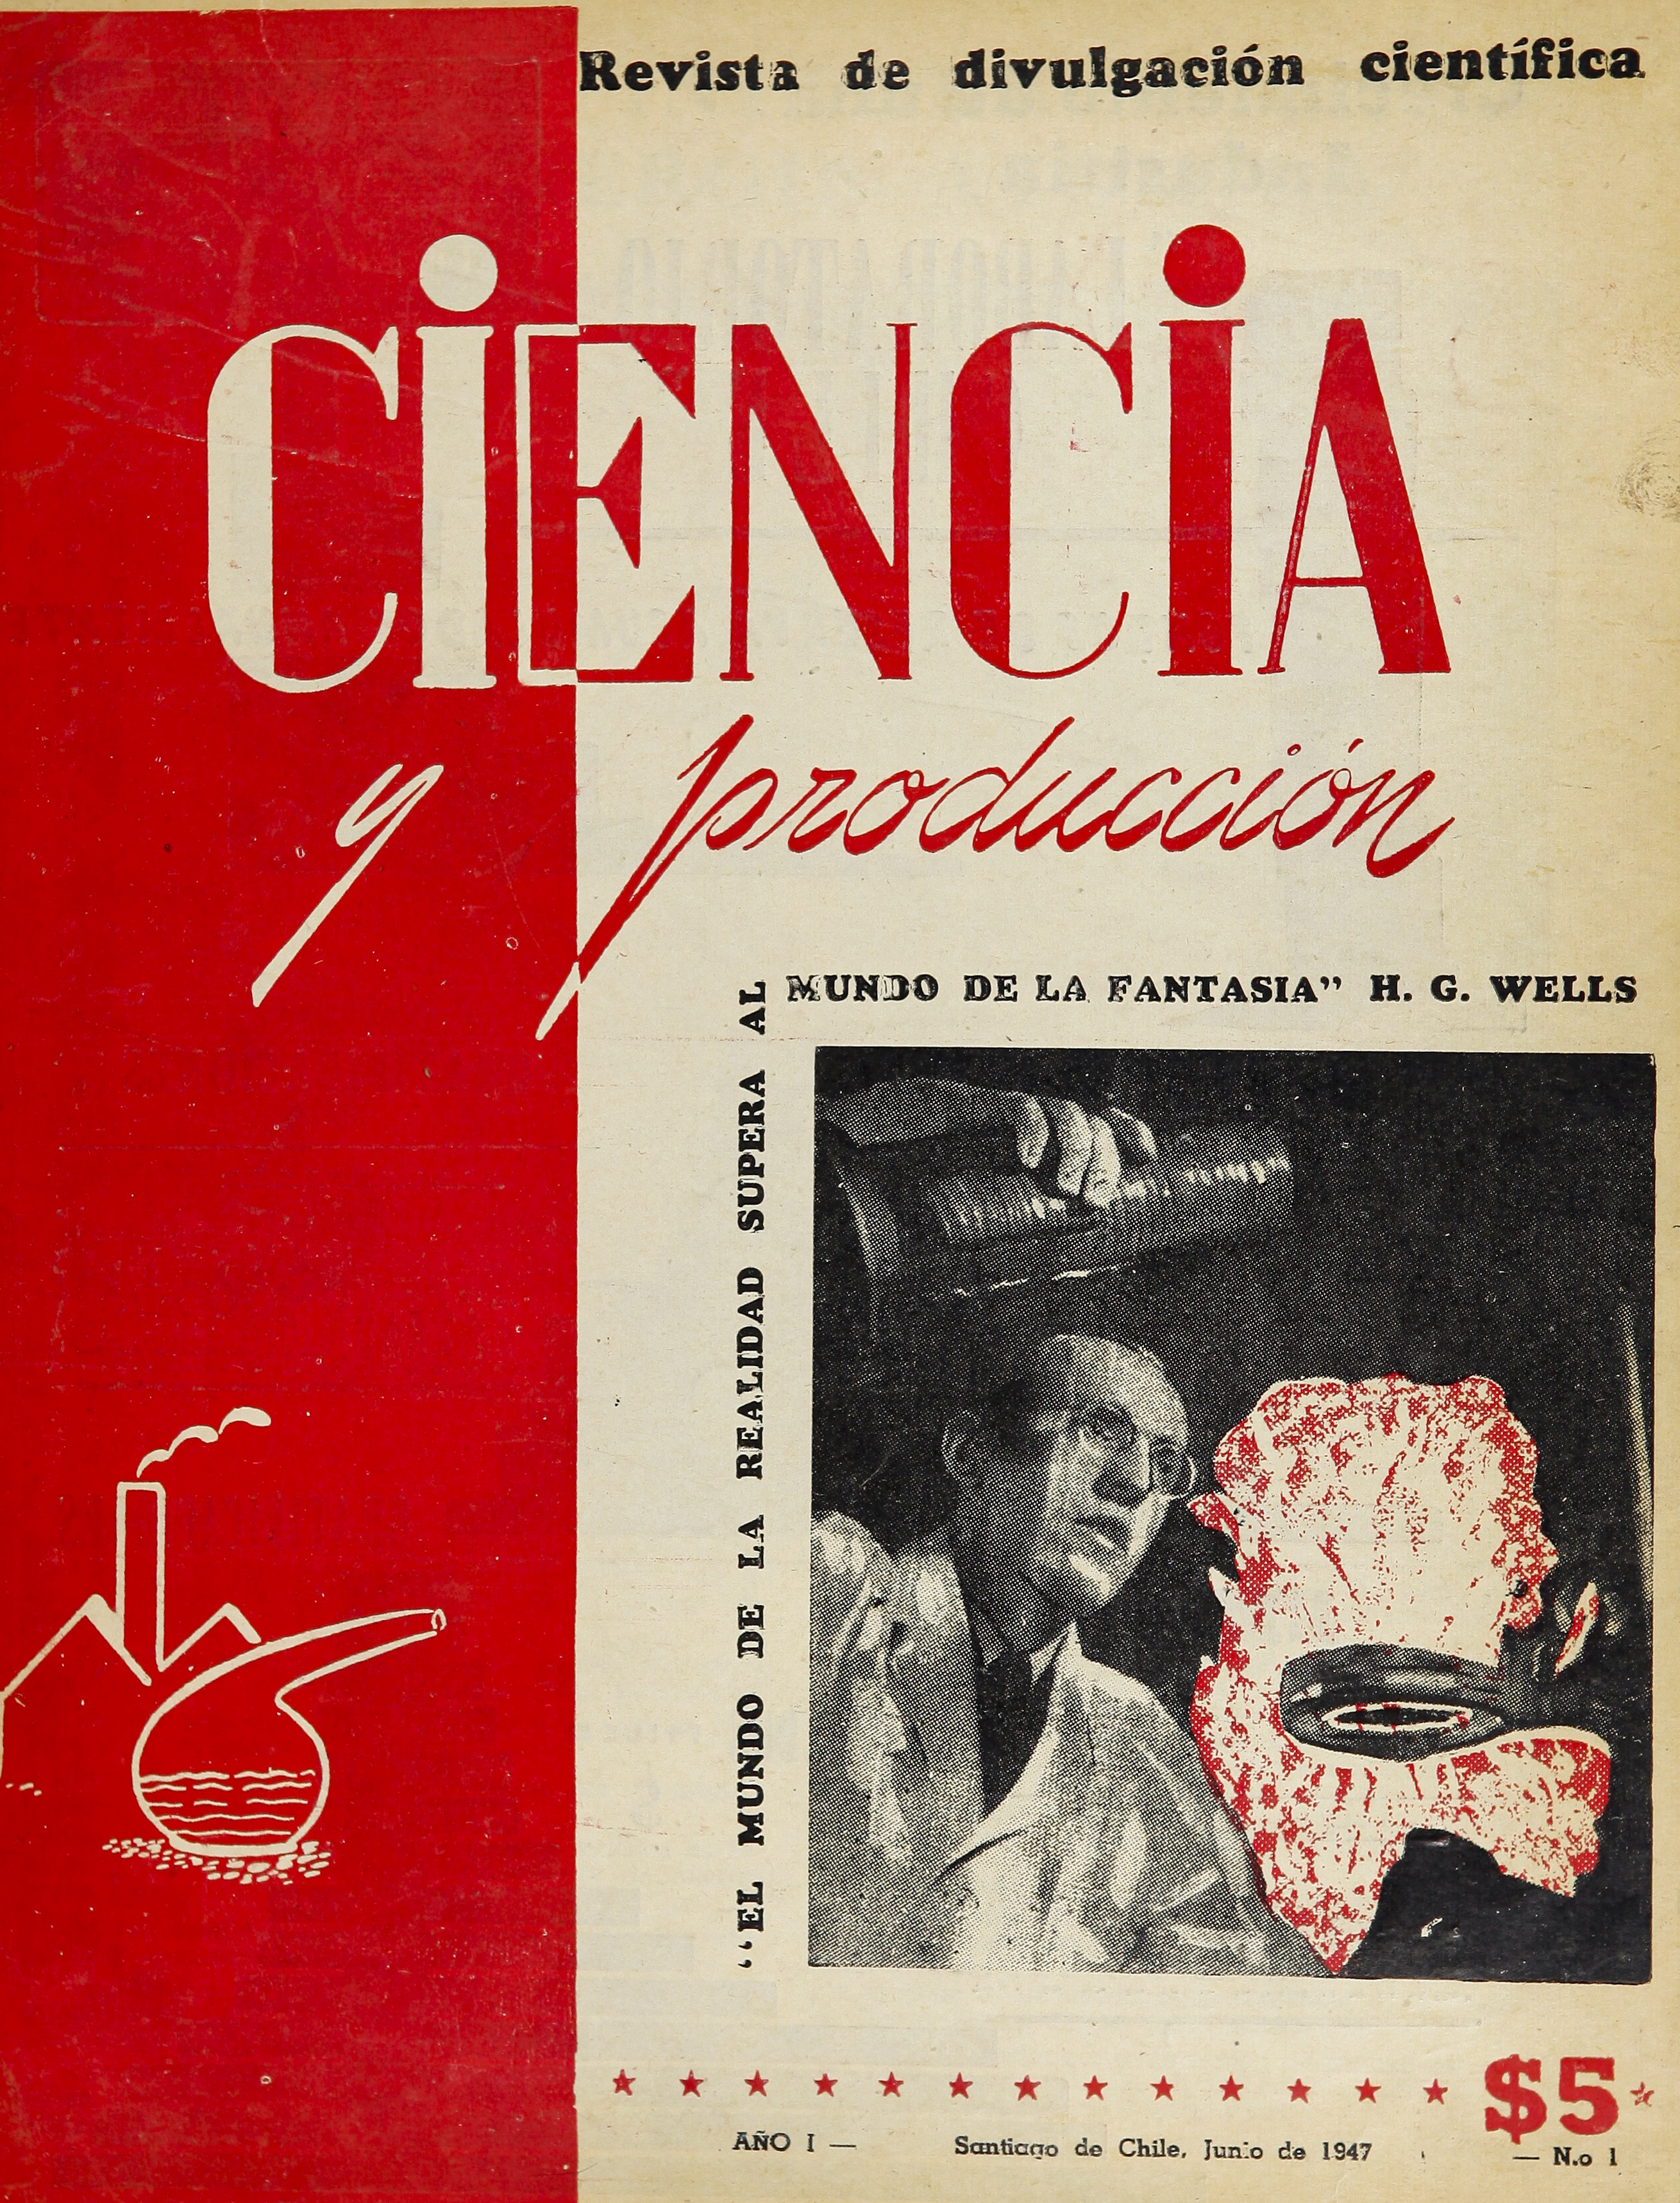 Ciencia y Producción: revista de divulgación científica, n° 1, junio de 1947